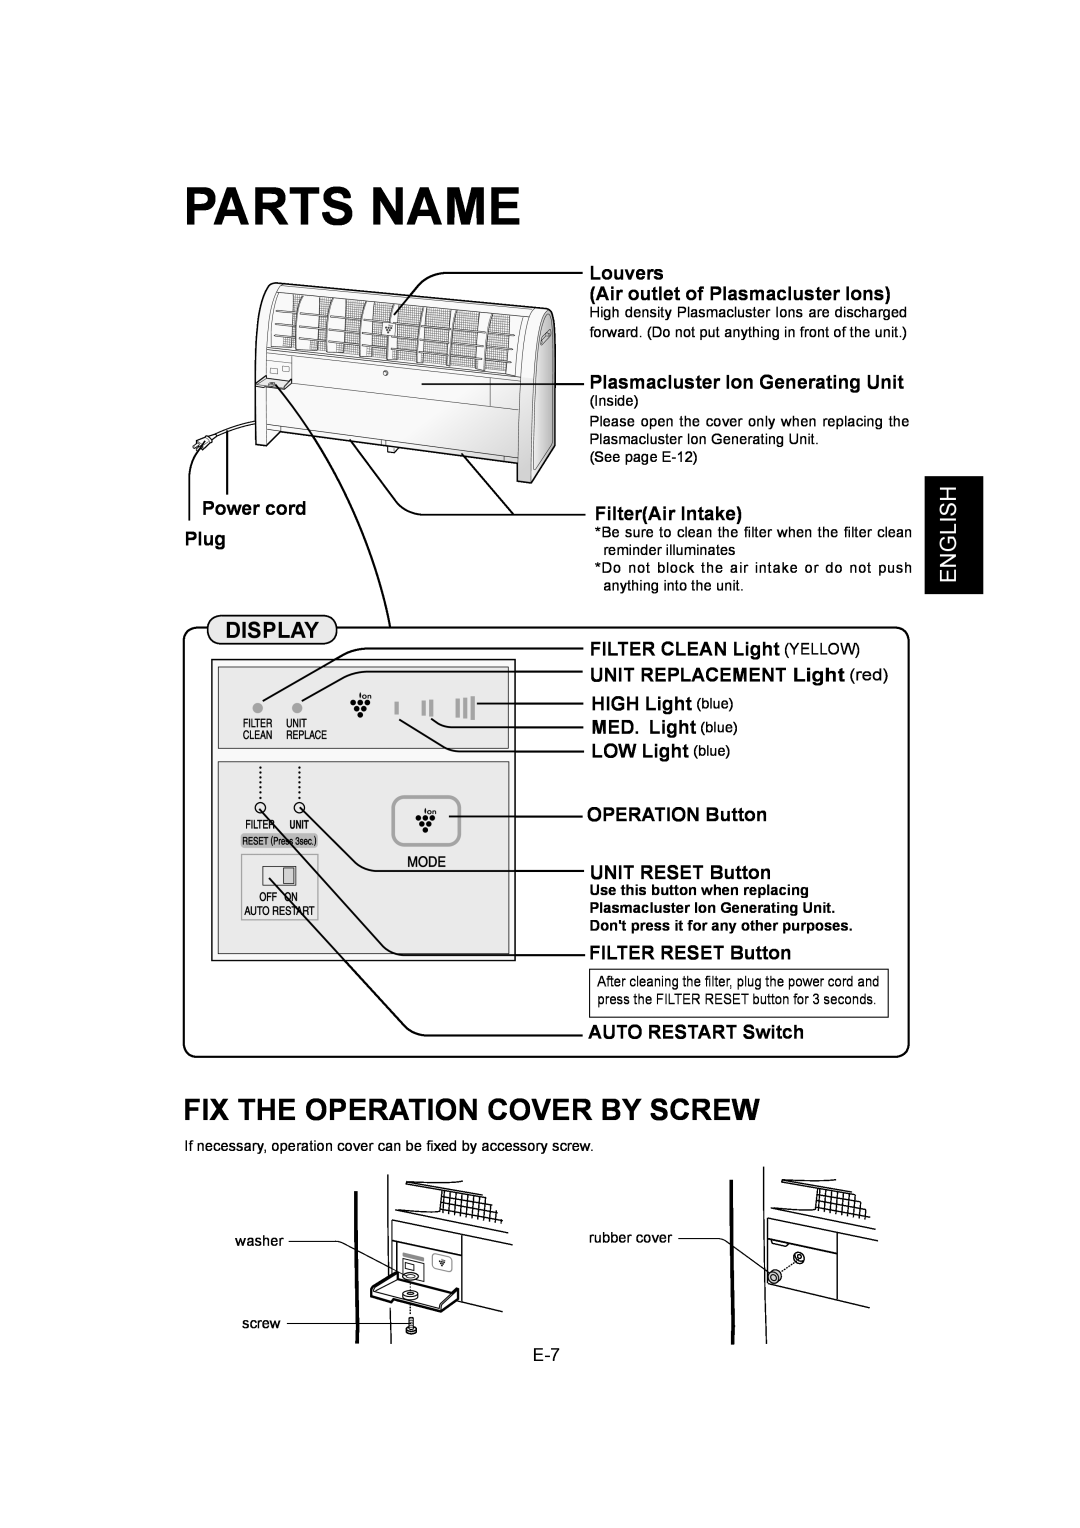 Sharp IG-A40U operation manual Parts Name, Fix The Operation Cover By Screw, Español Français English 